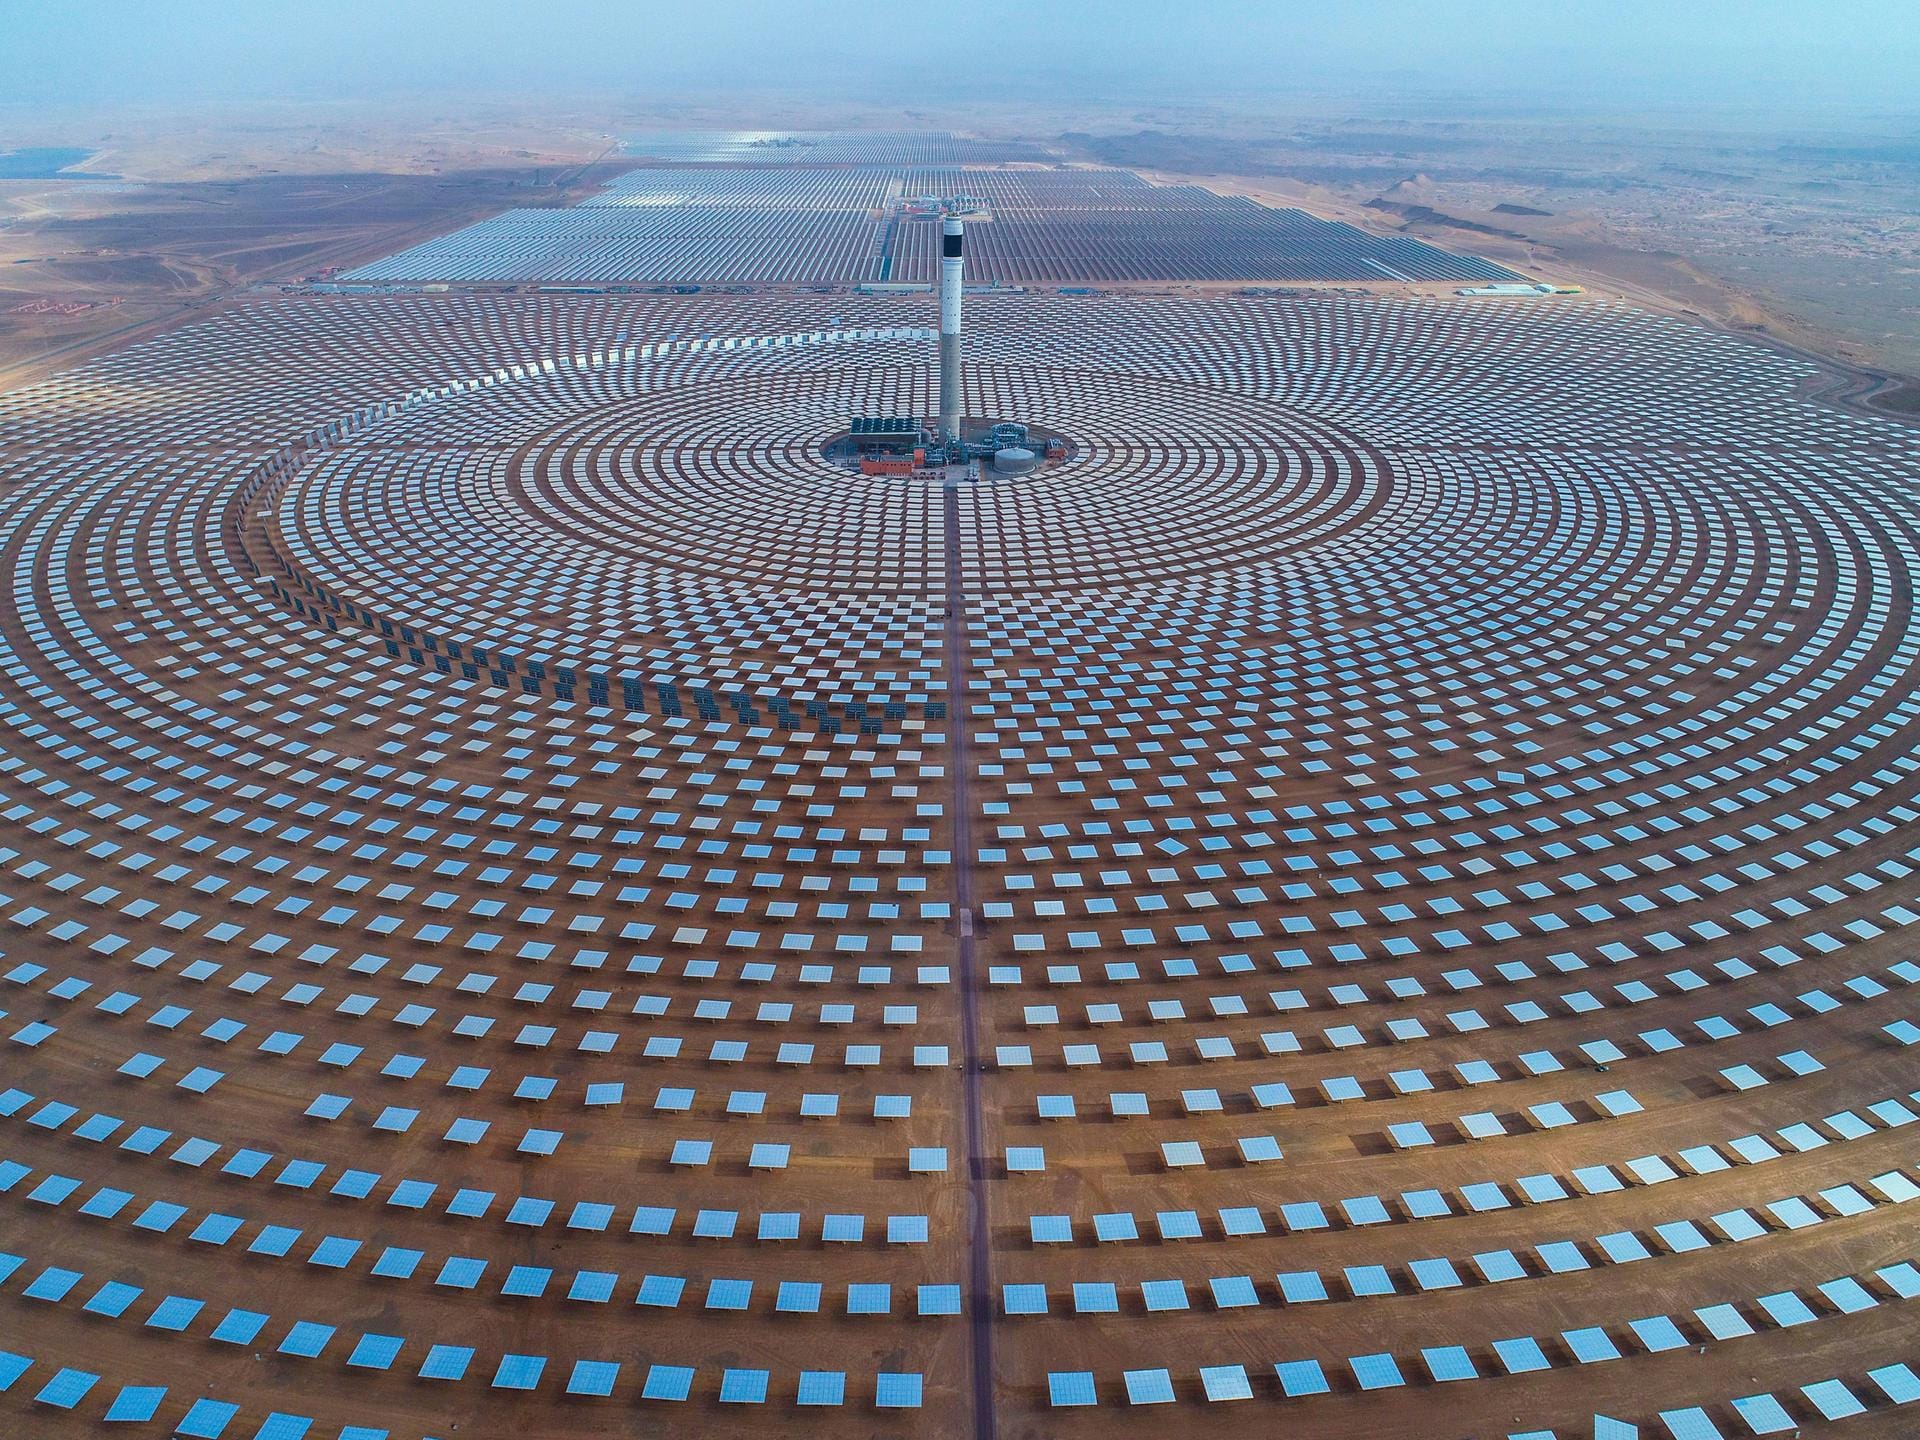 Die Anlage ist riesengroß. Sie soll am Ende elektrische Energie für mindestens 1,3 Millionen Menschen erzeugen – vor allem in Marokko.